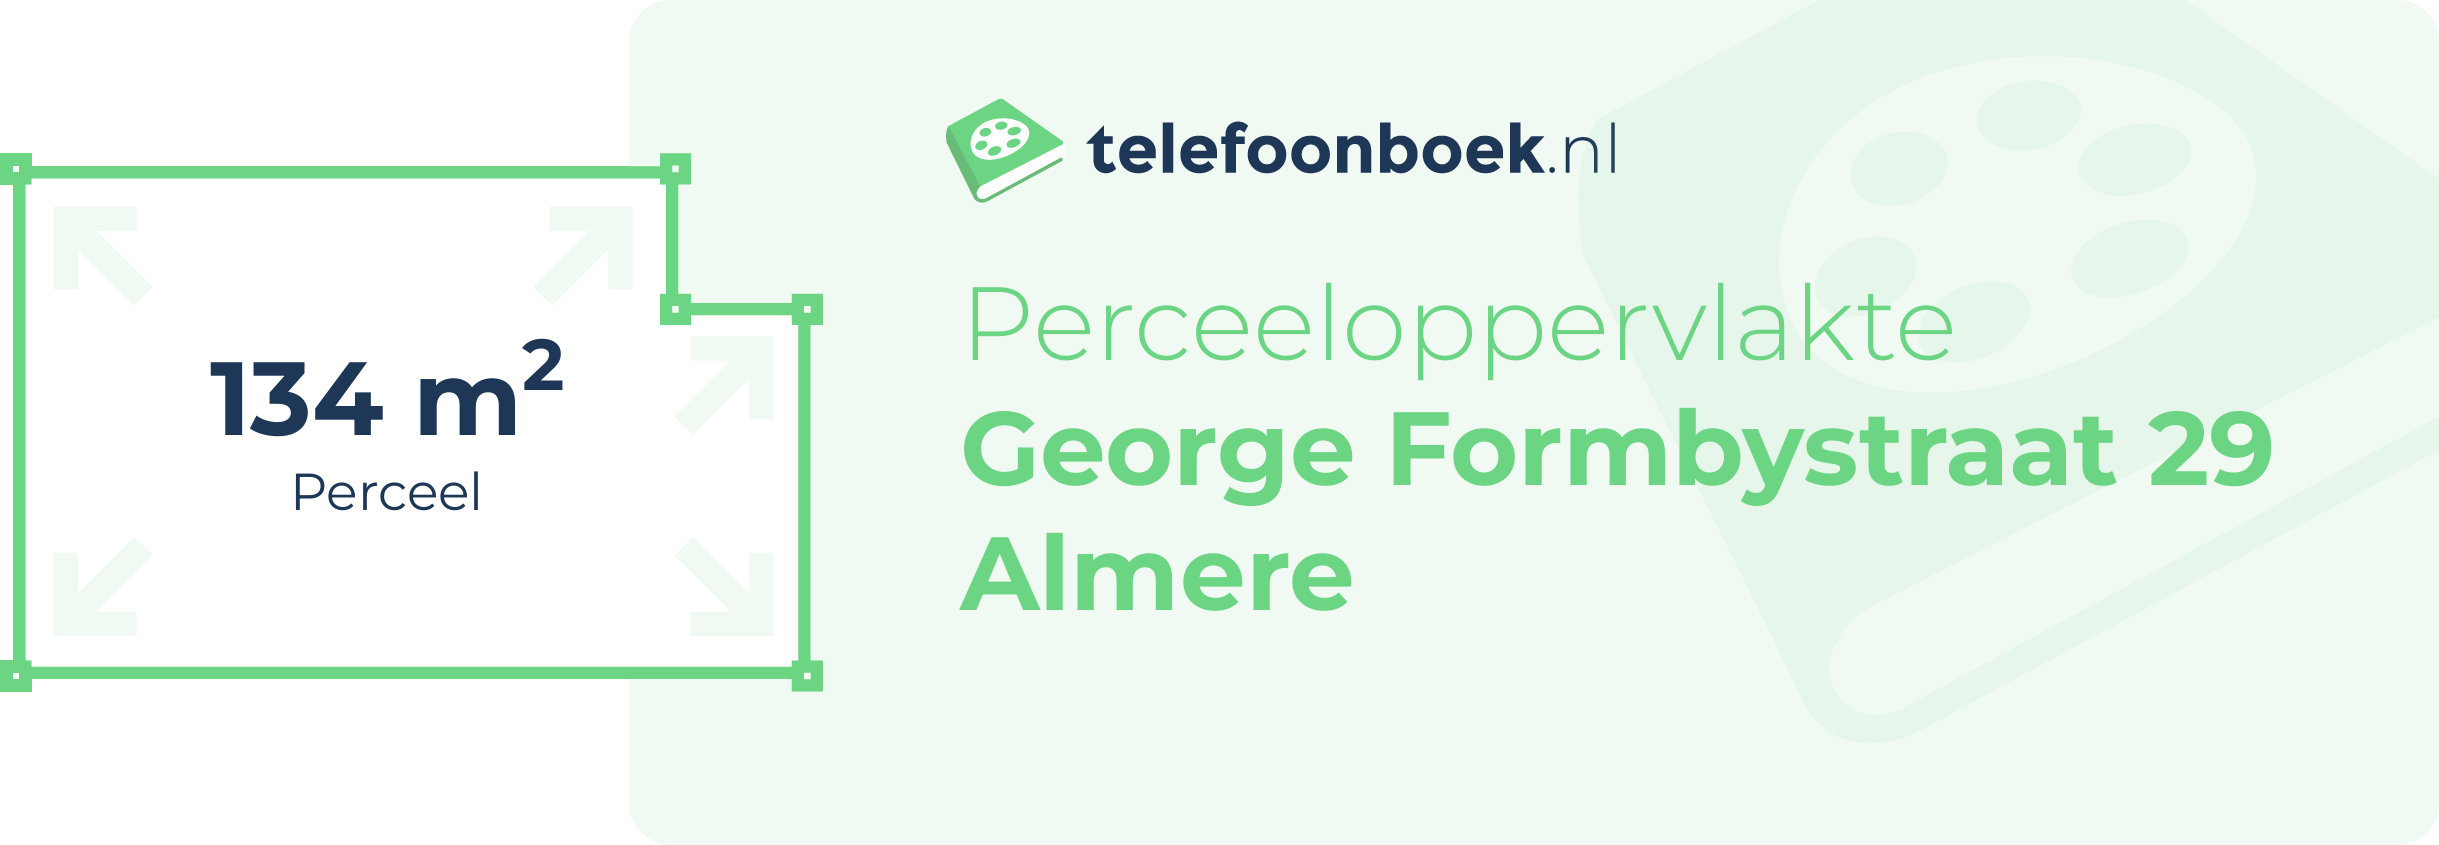 Perceeloppervlakte George Formbystraat 29 Almere